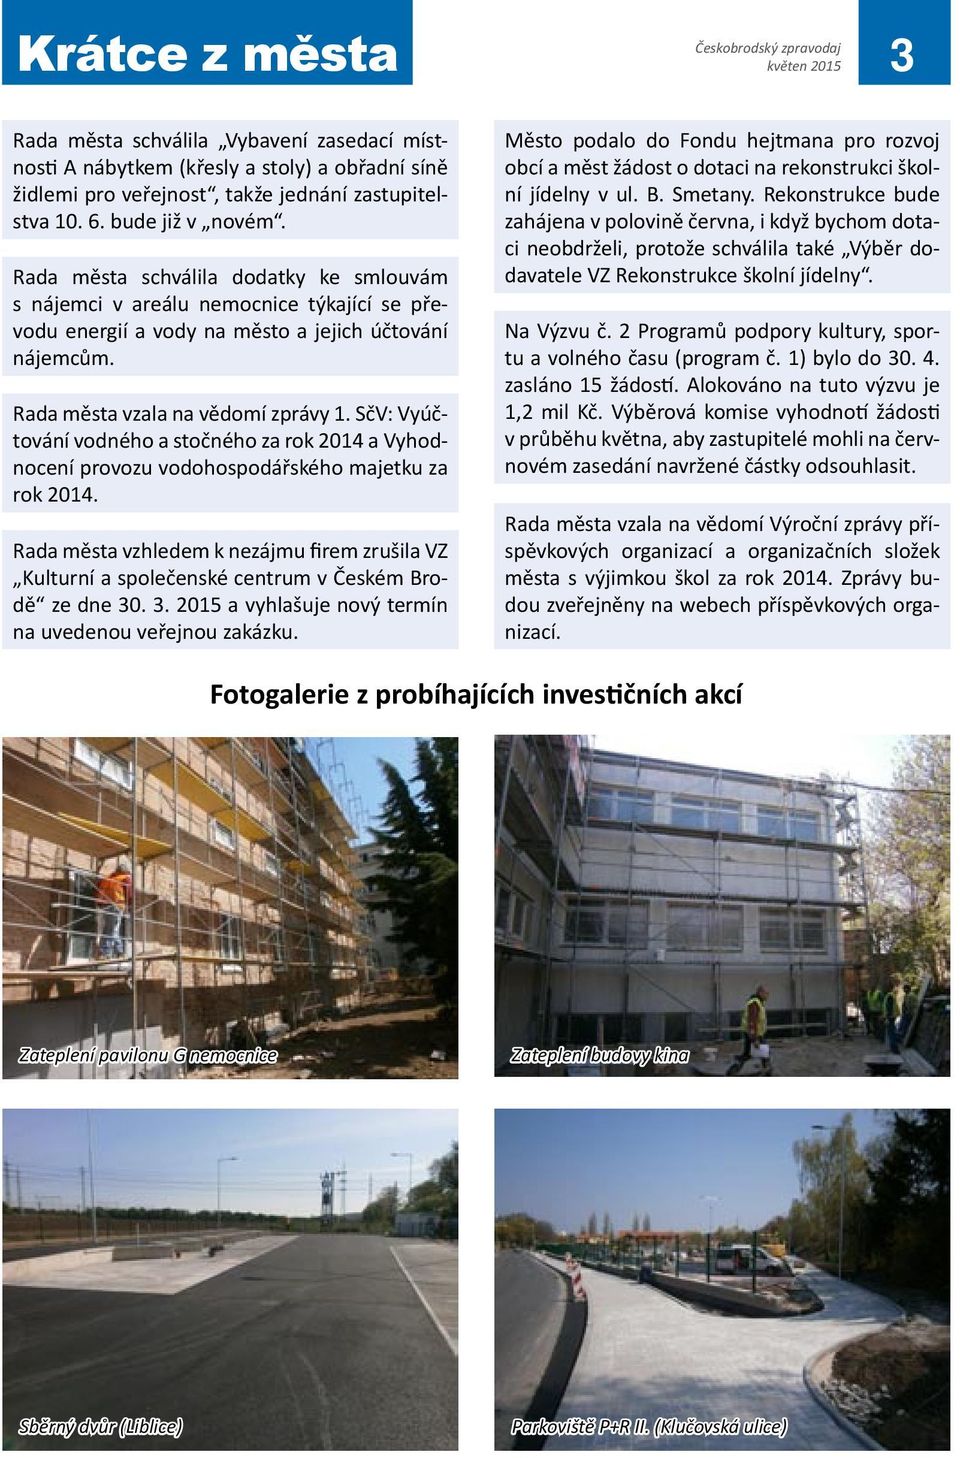 SčV: Vyúčtování vodného a stočného za rok 2014 a Vyhodnocení provozu vodohospodářského majetku za rok 2014.